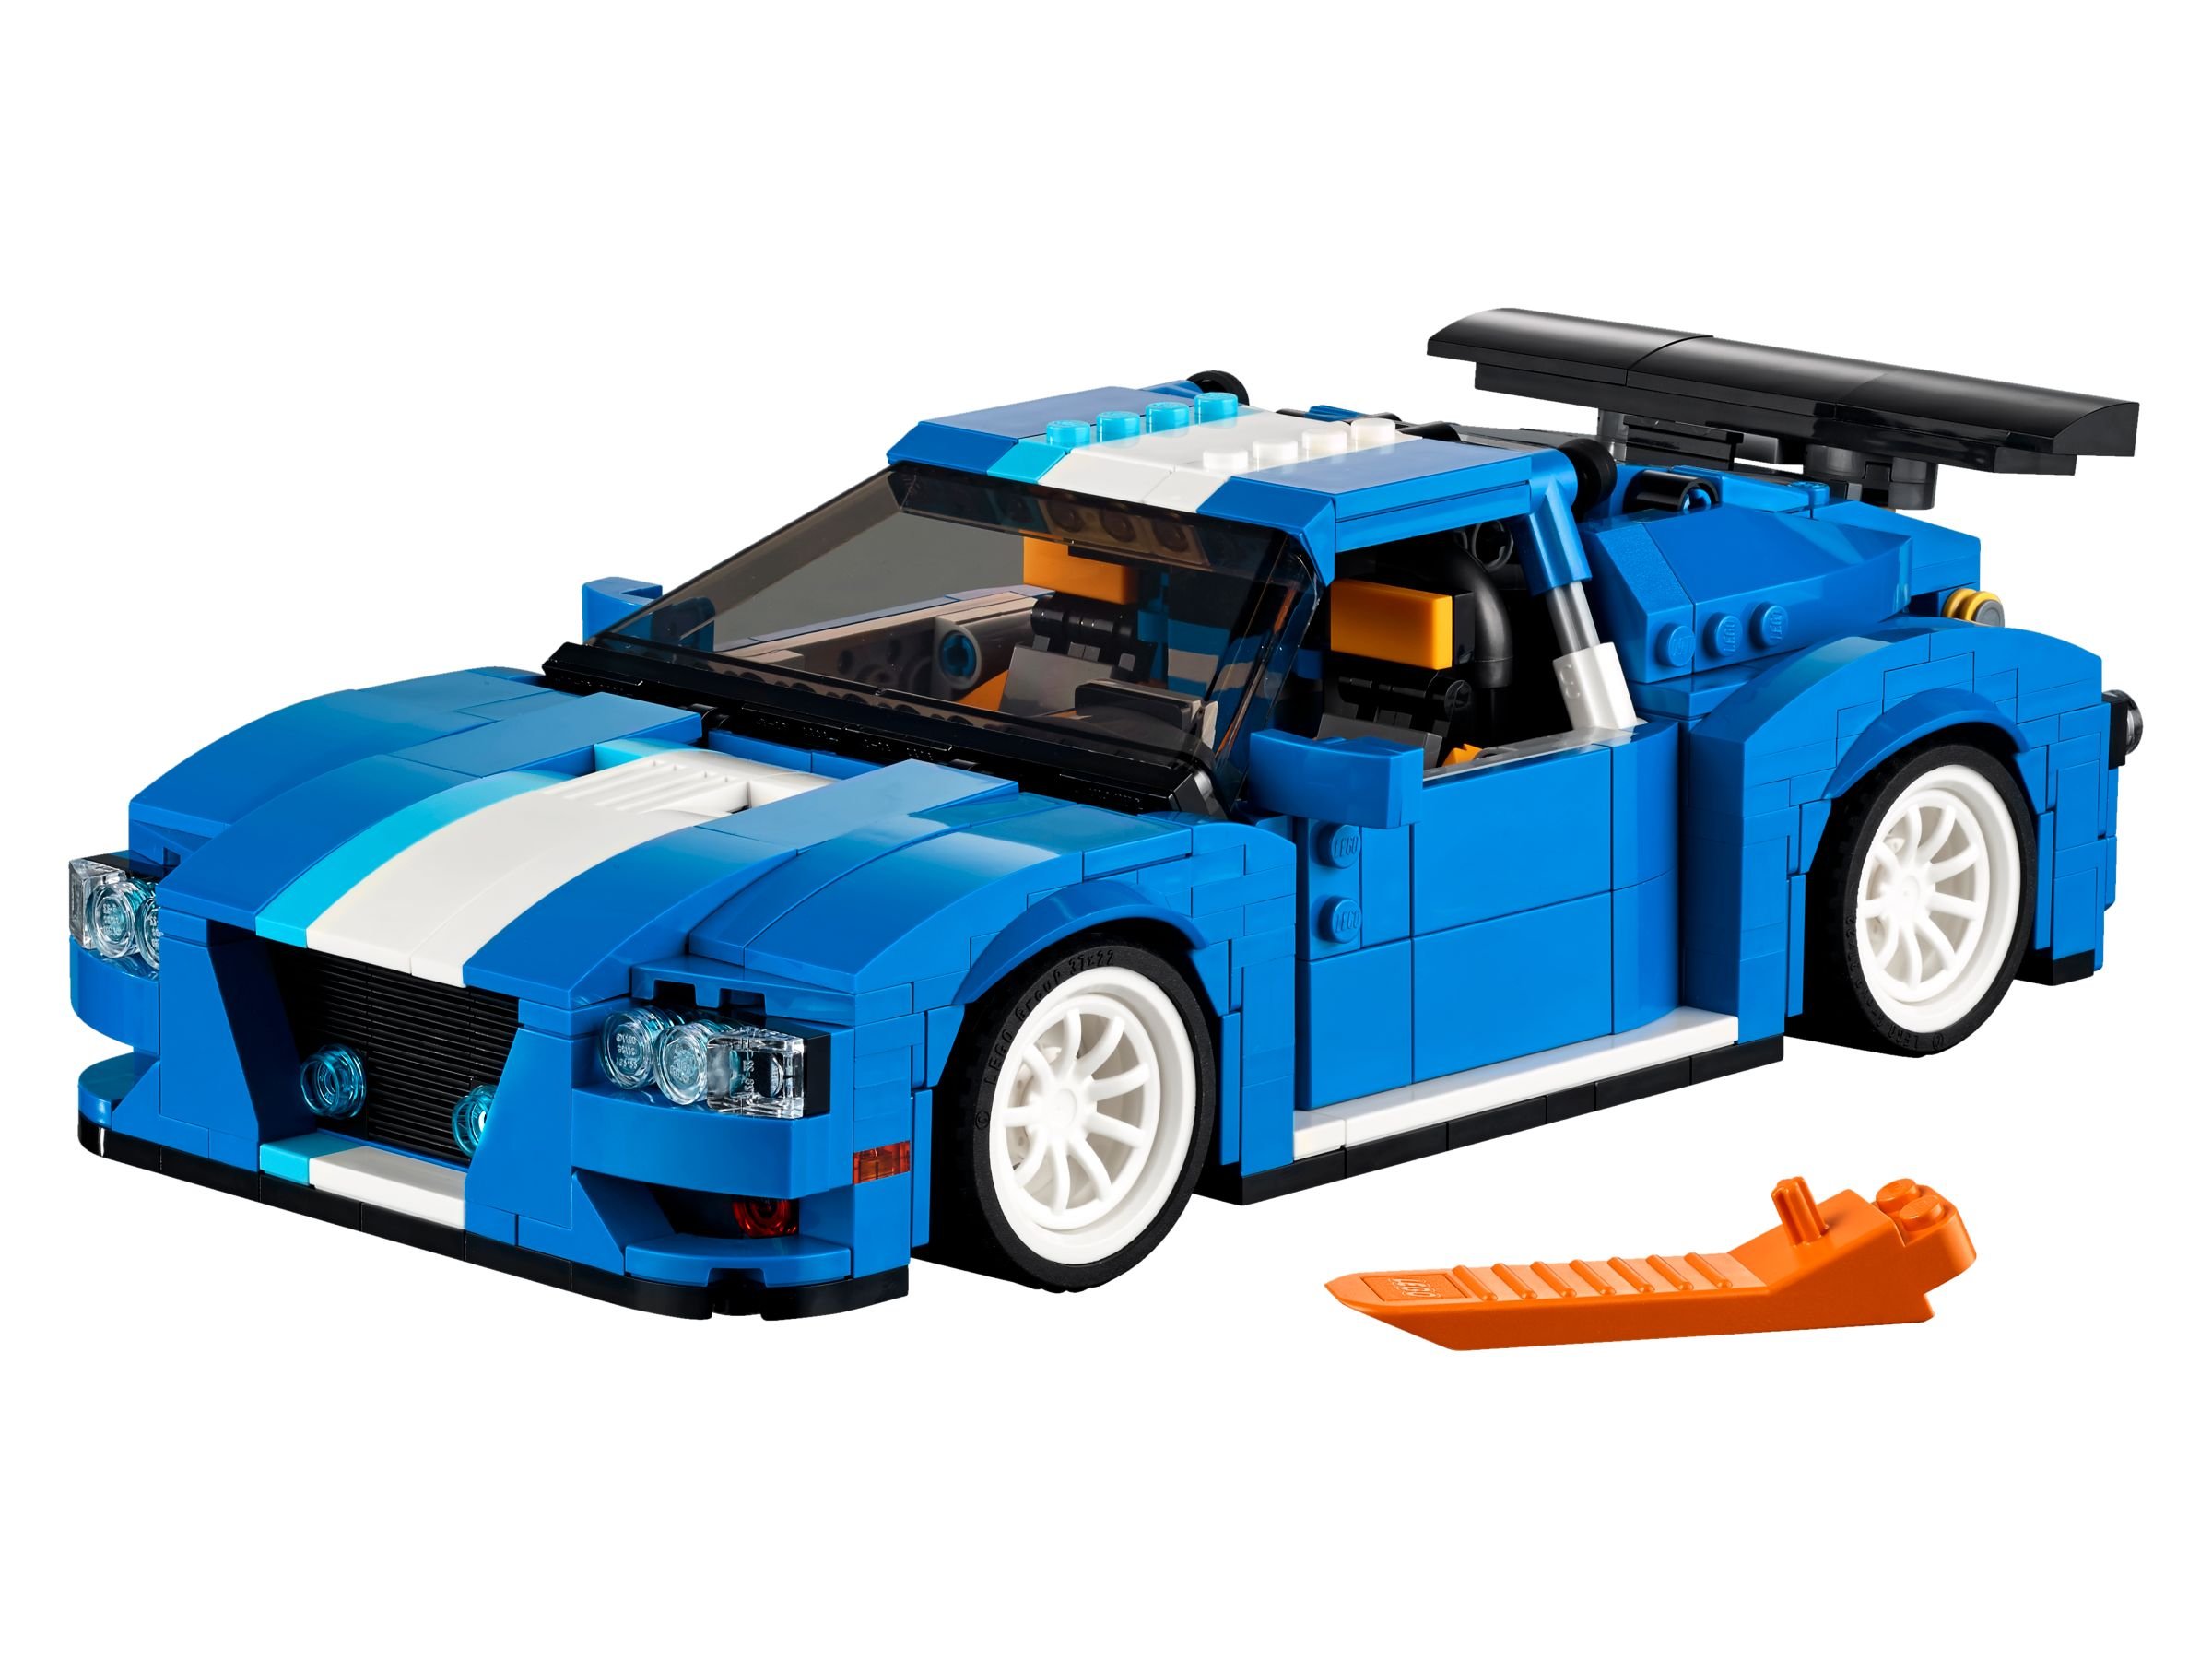 LEGO Creator 31070 Turborennwagen LEGO_31070.jpg